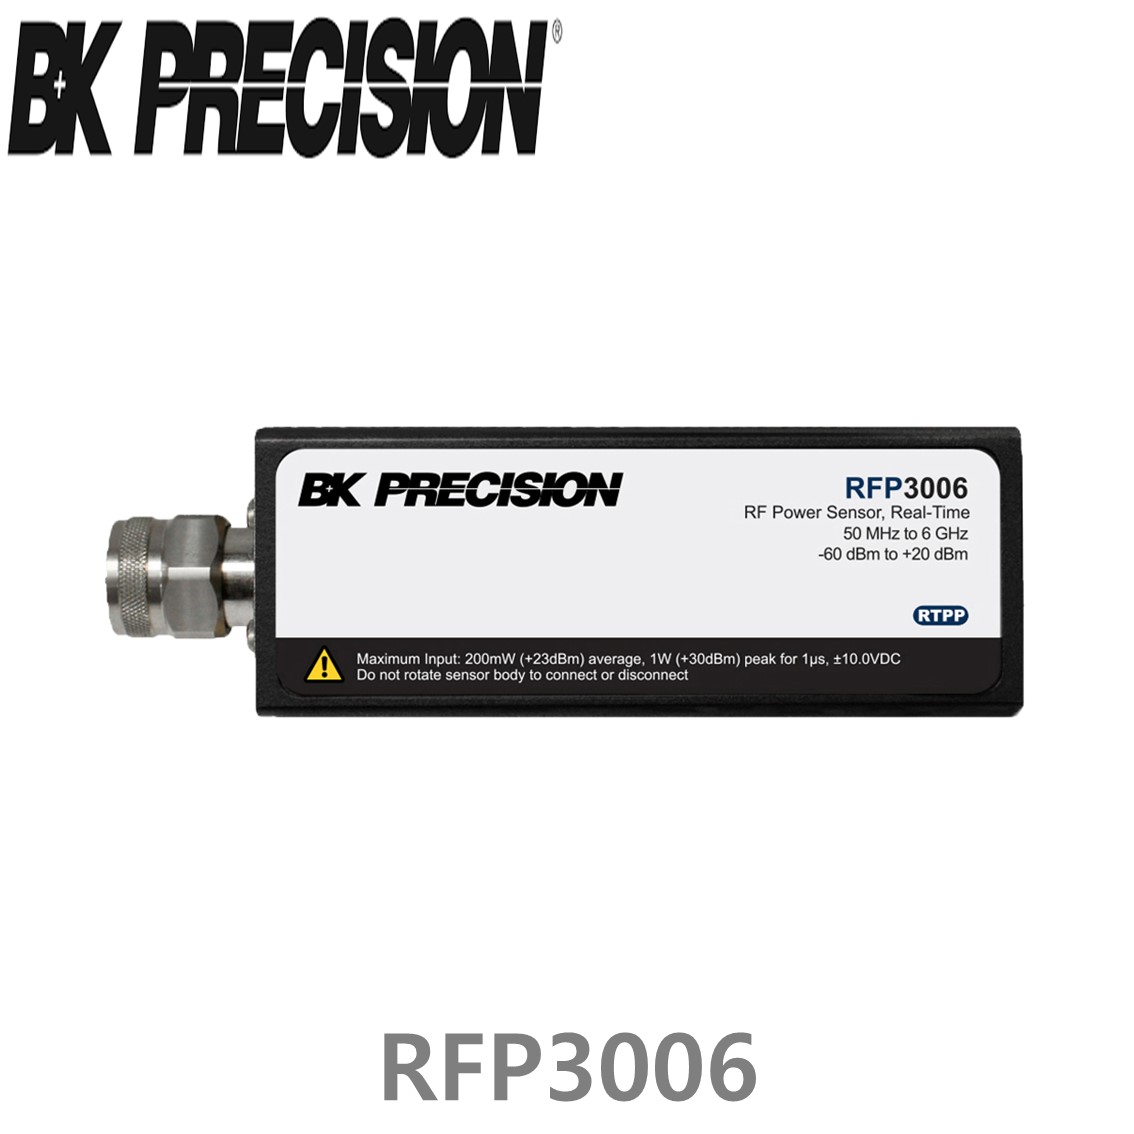 [ BK Precision ] RFM3002  2채널 RF 전력계(RFP3006, RFP3008, RFP3018, RFP3040, RFP3118, RFP3140)